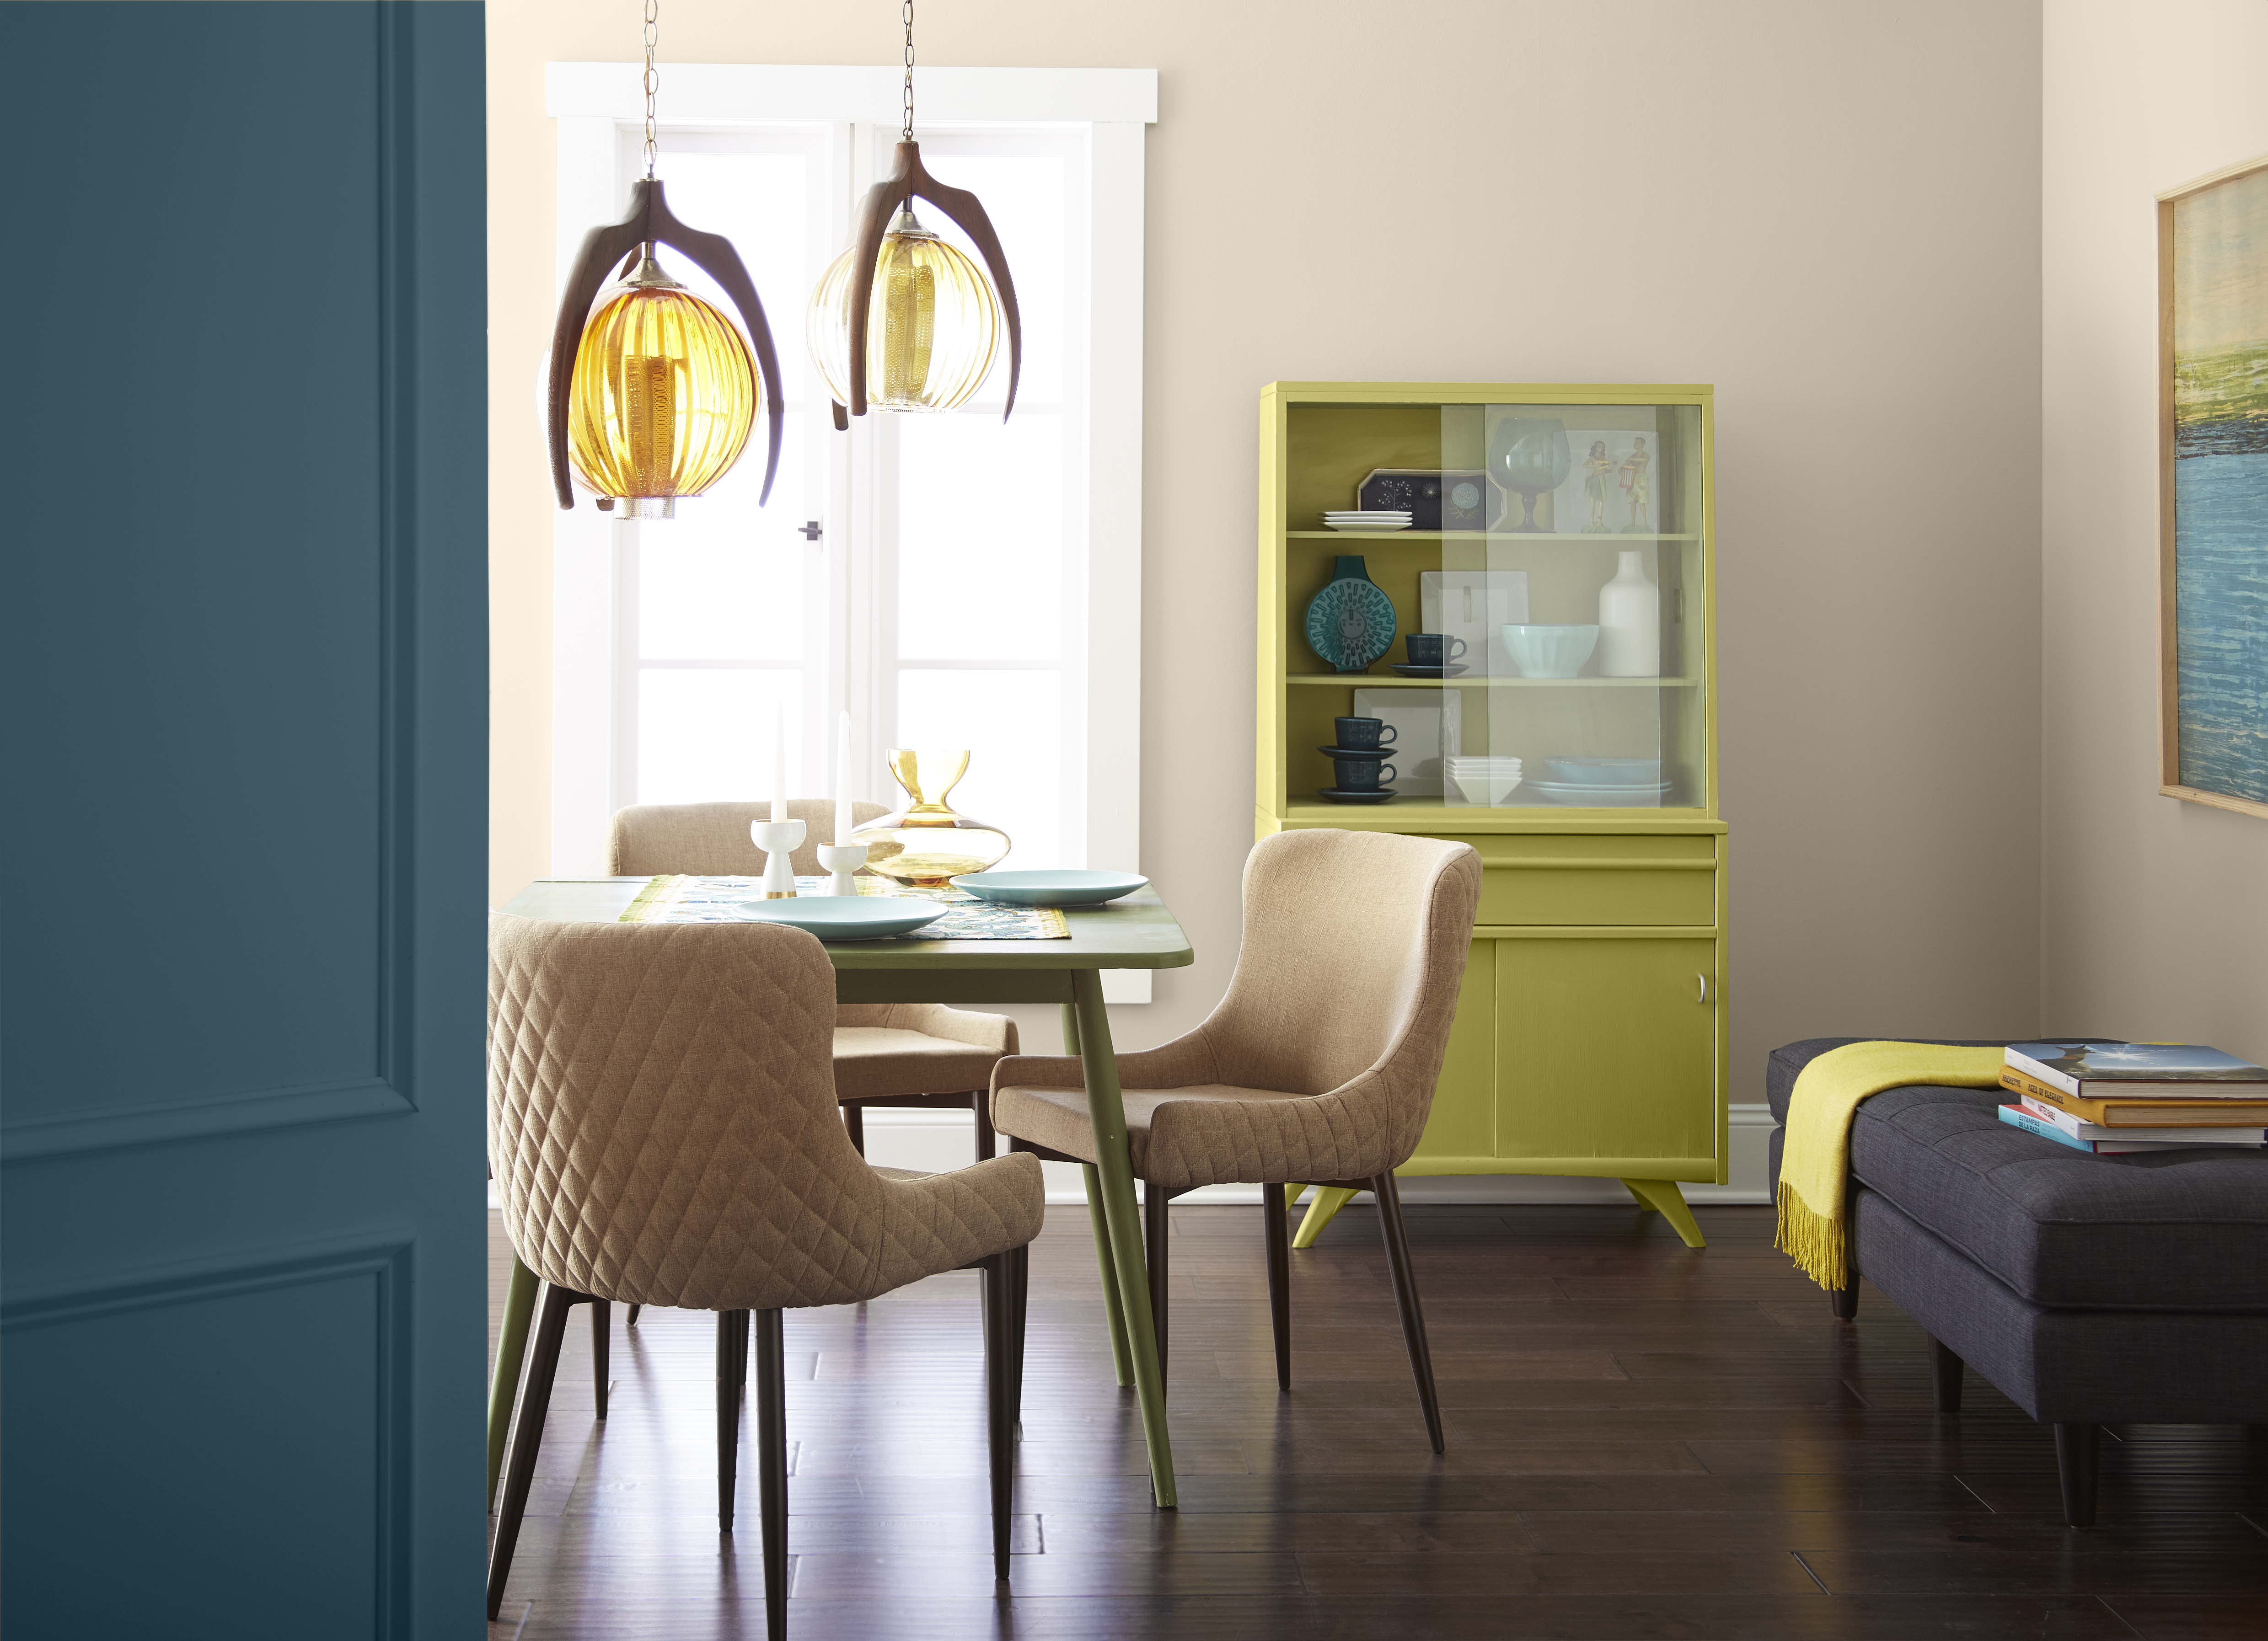 Espace de salle à manger d'inspiration rétro avec un meuble peint dans un vert pâle audacieux